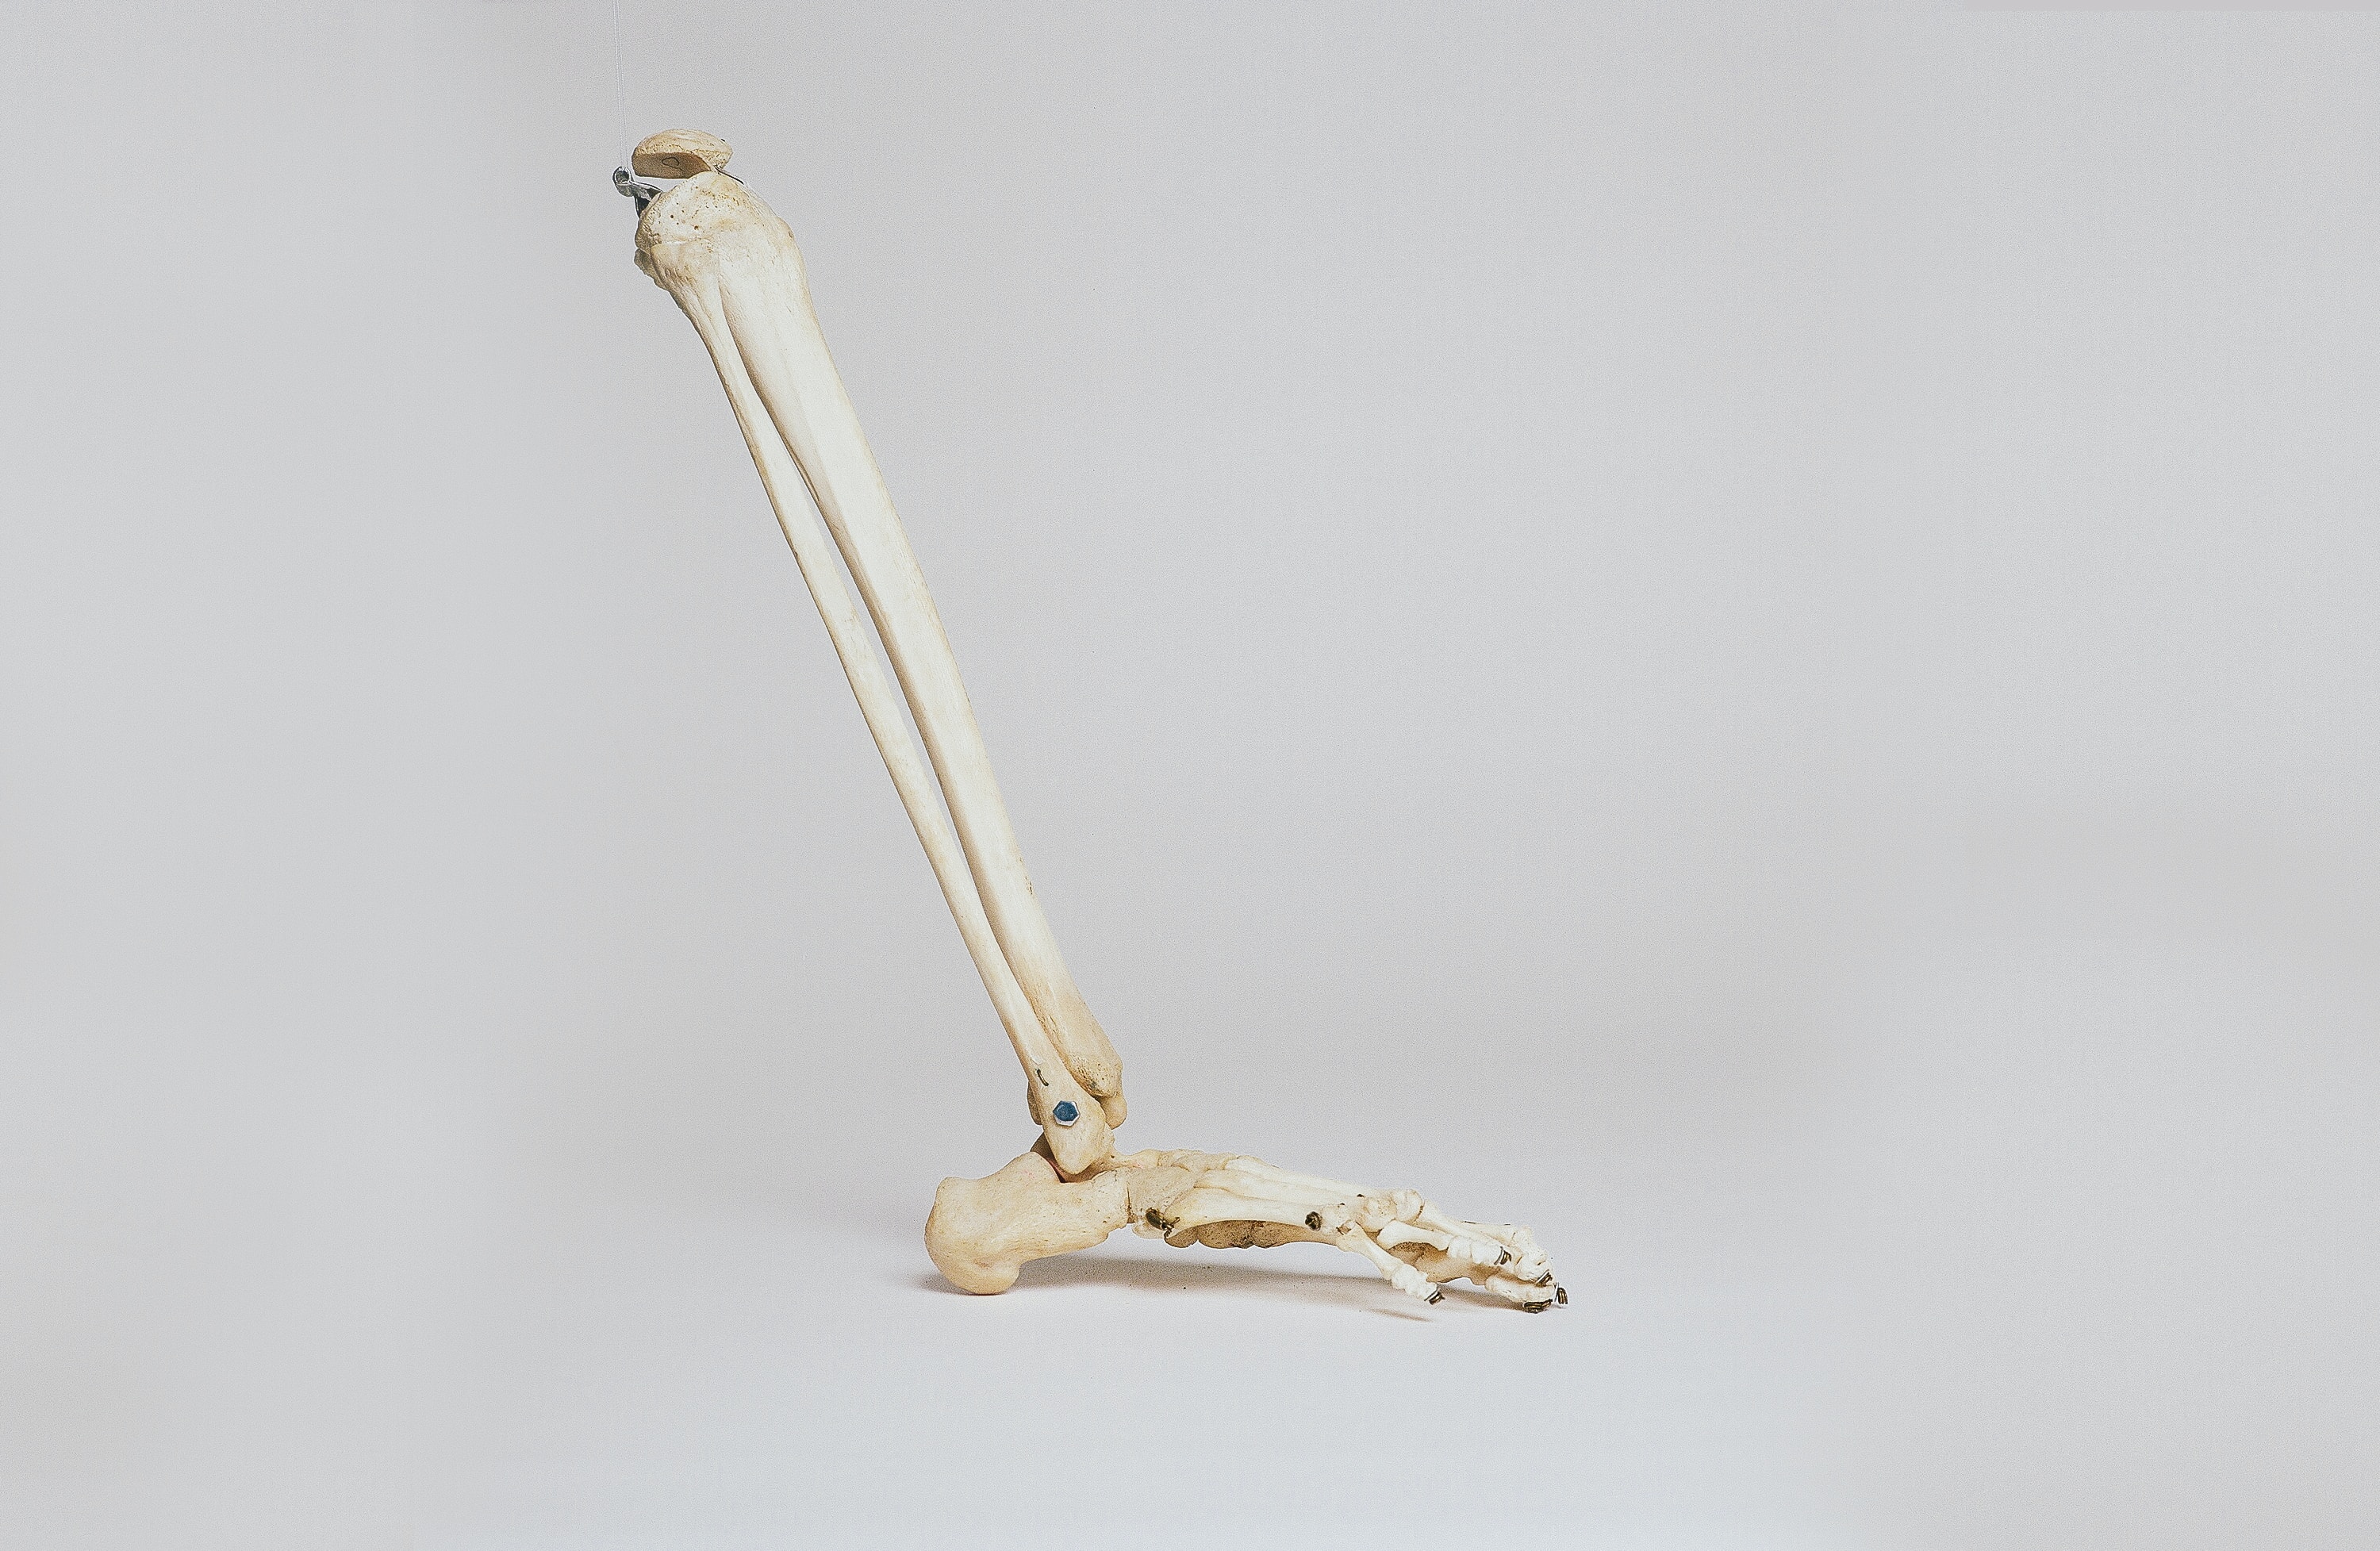 Foot skeleton